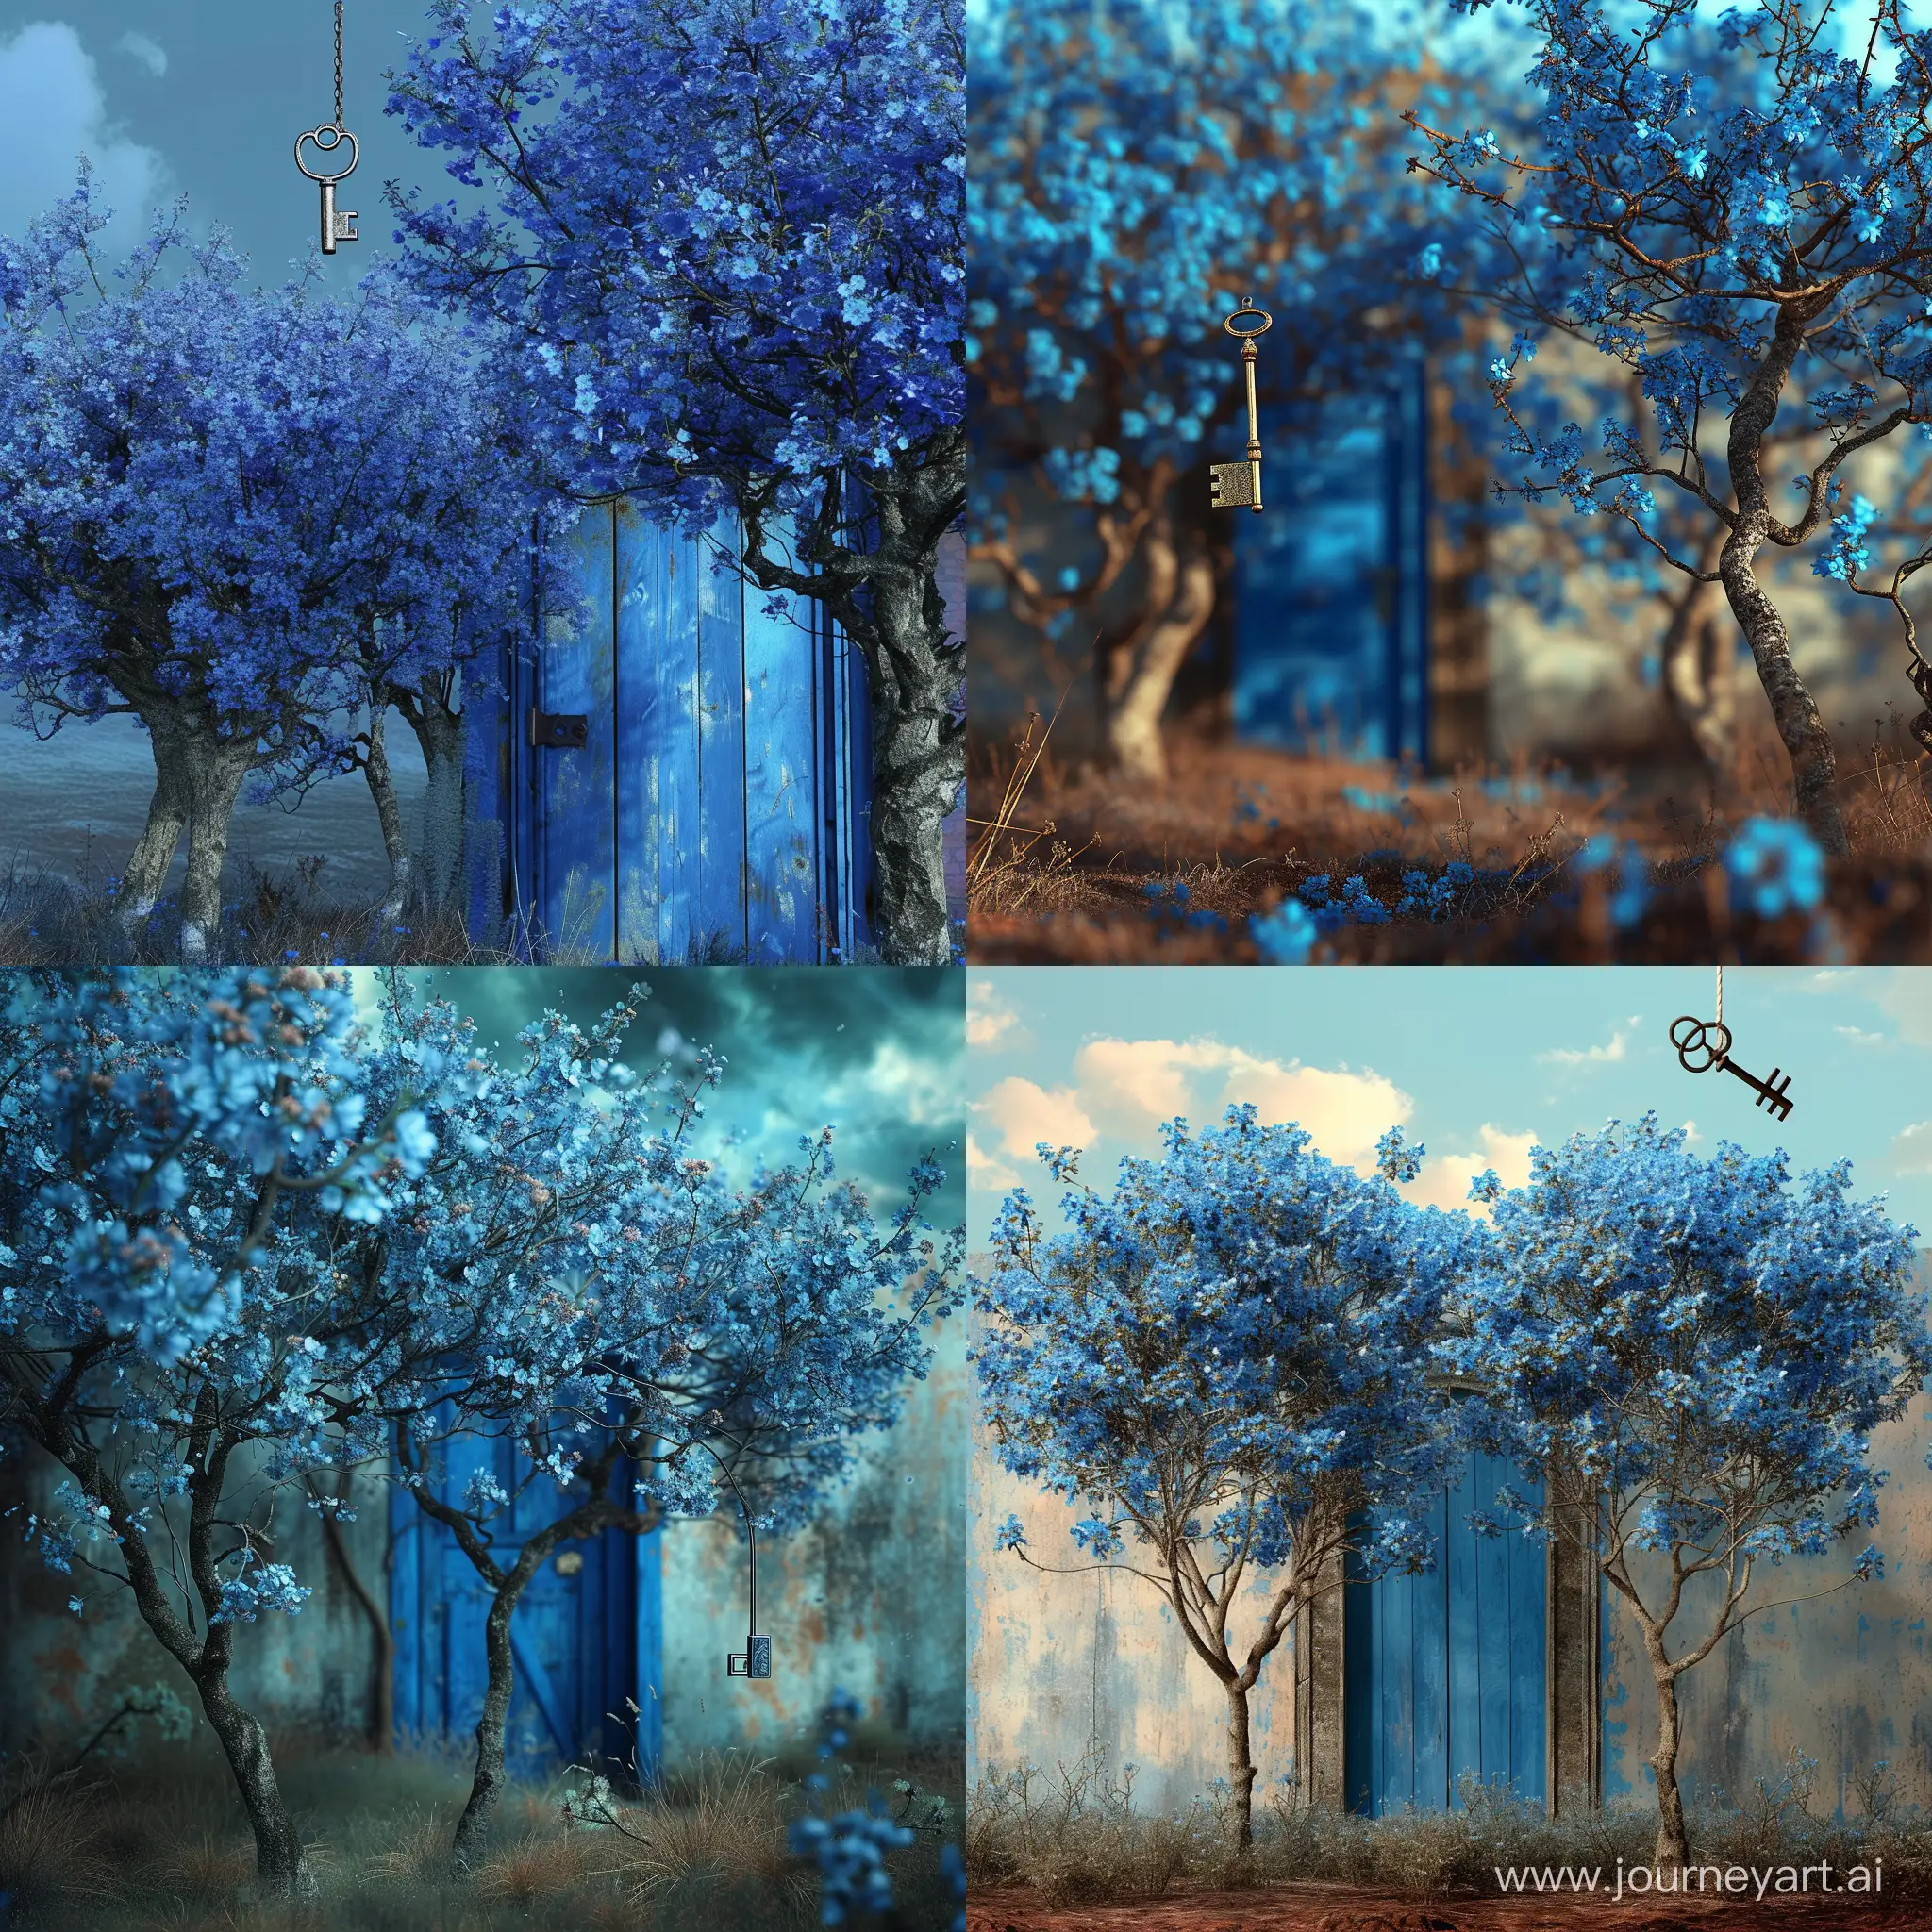 Цветущие деревья они цветут синими цветами. За ними стоит старинная синяя дверь, она приоткрыта в сказочный мир. В этот мир можно попасть с помощью магического ключа, он висит в воздухе